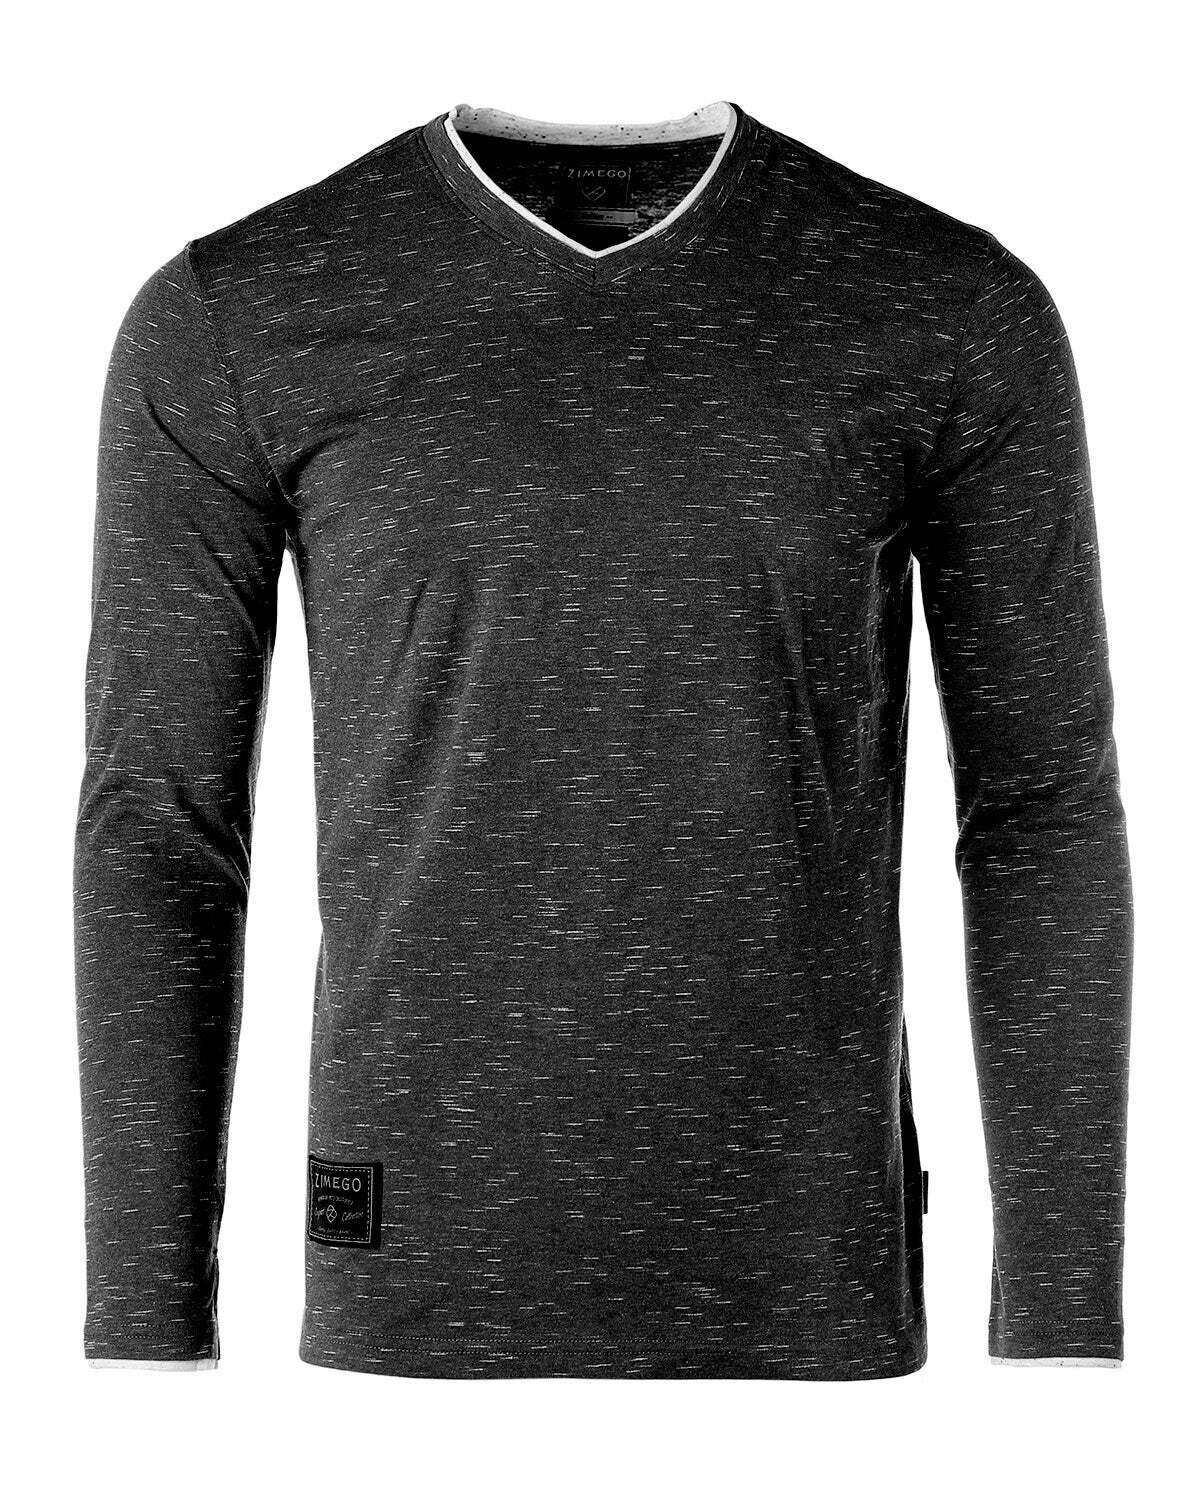 ZIMEGO Mens Basic Fashion Layered Cuff V-Neck Slim Athletic Long Sleeve T-Shirt